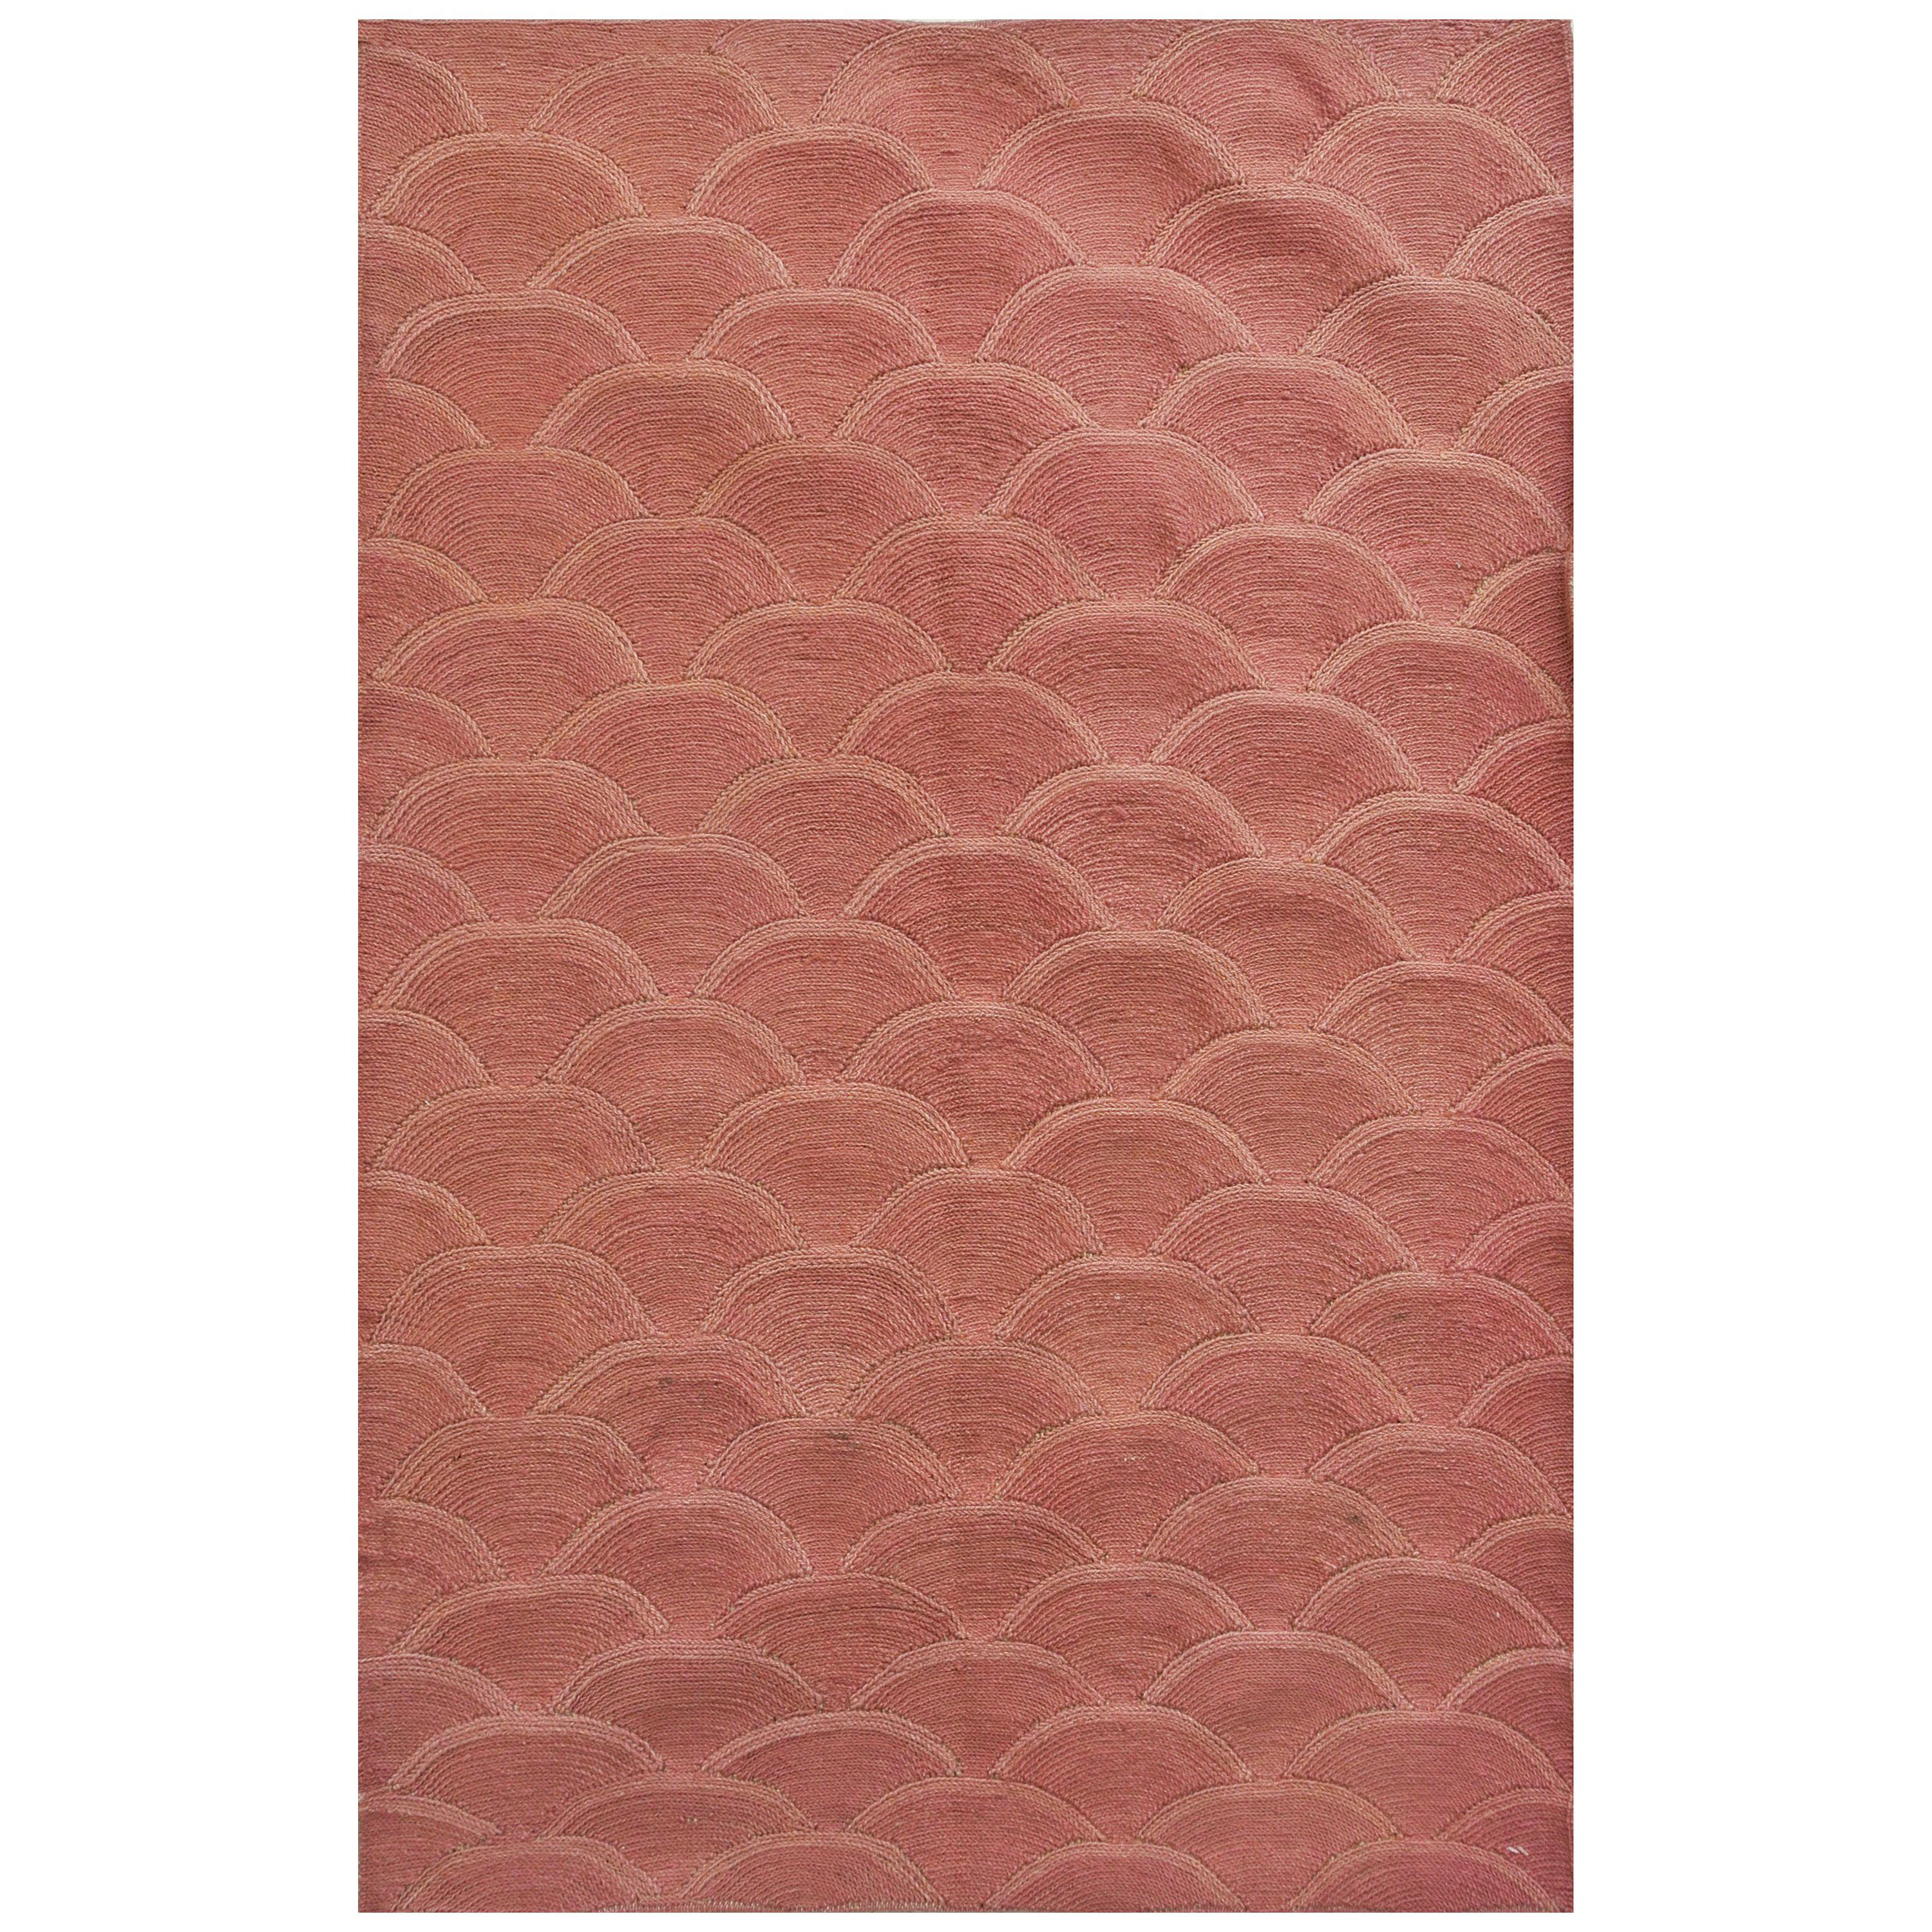 Pink Modern Persian Rug, Wool, Orley Shabahang, 3' x 5'